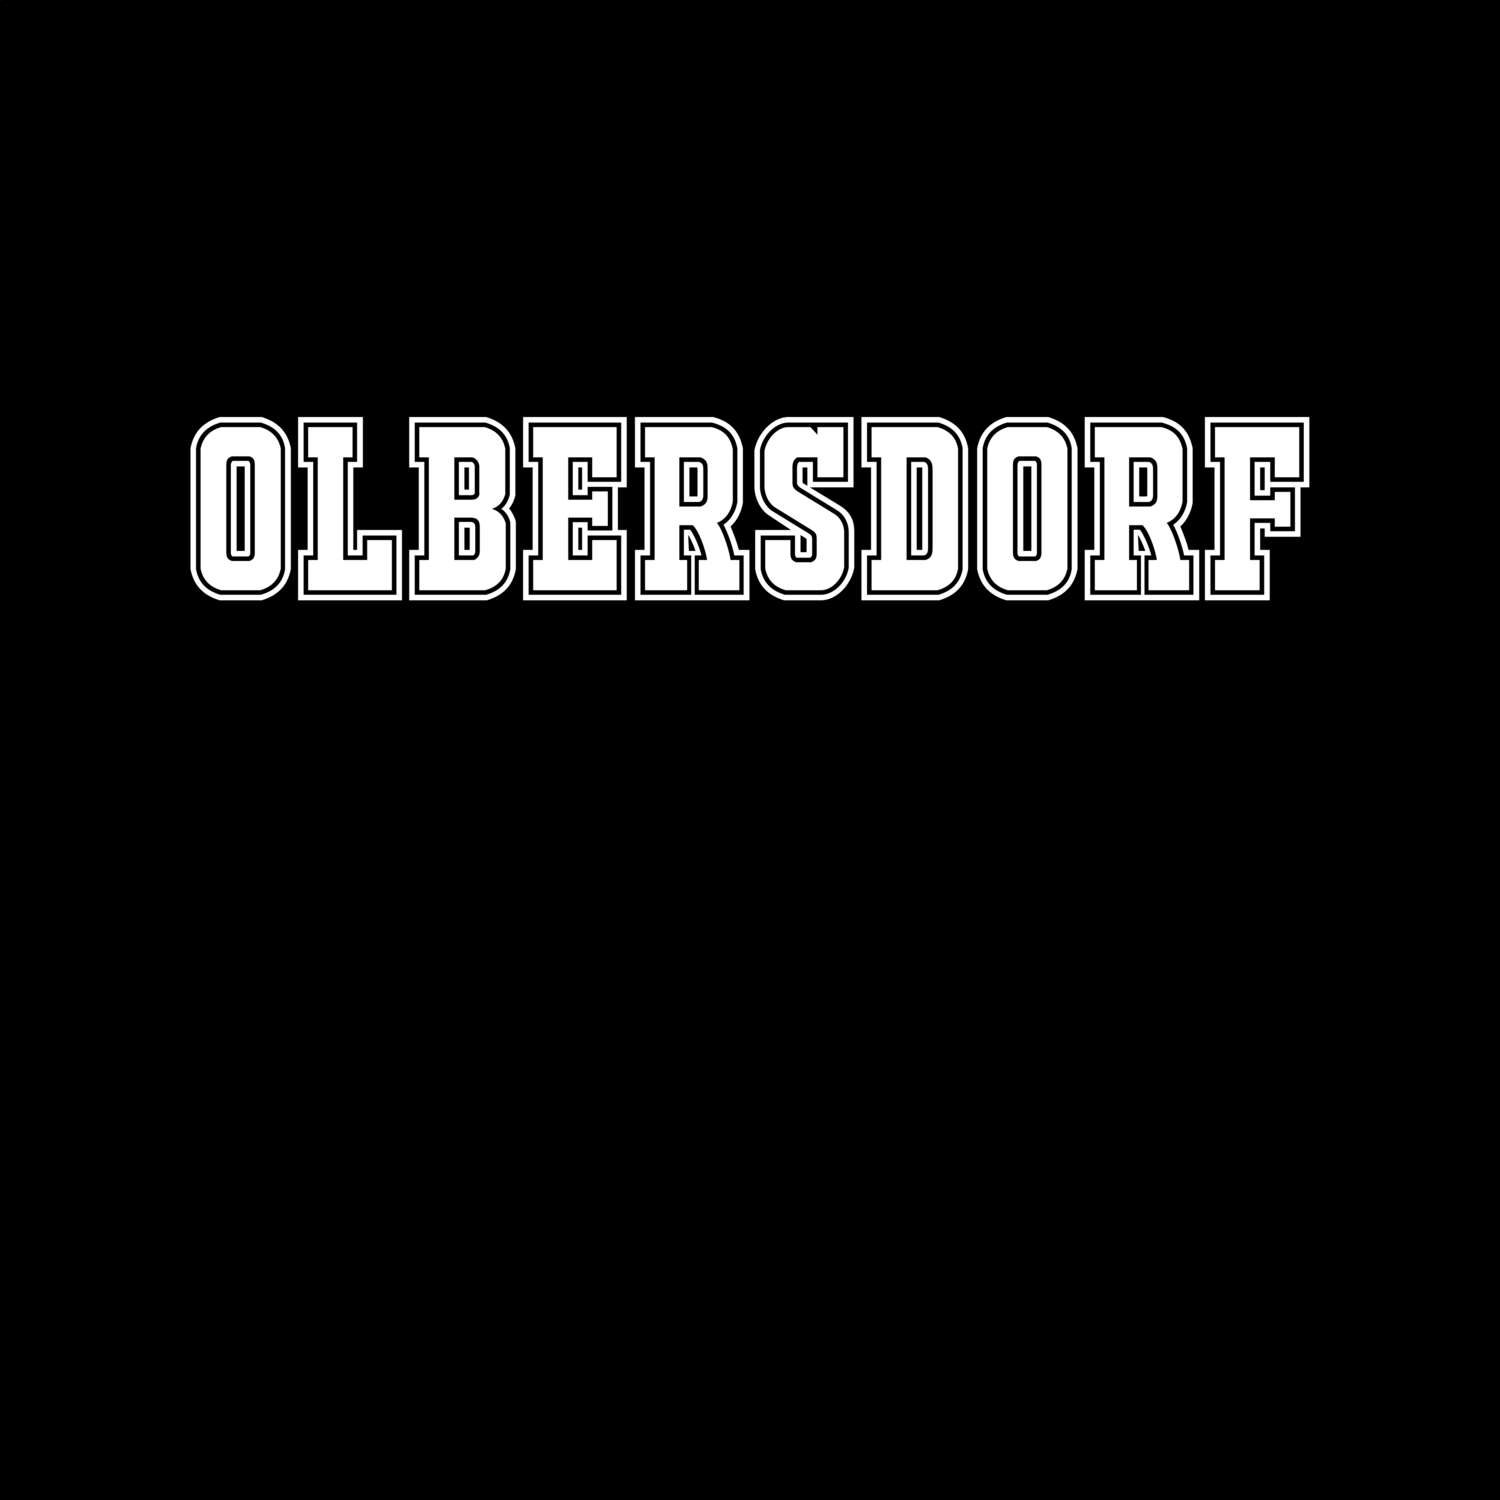 Olbersdorf T-Shirt »Classic«